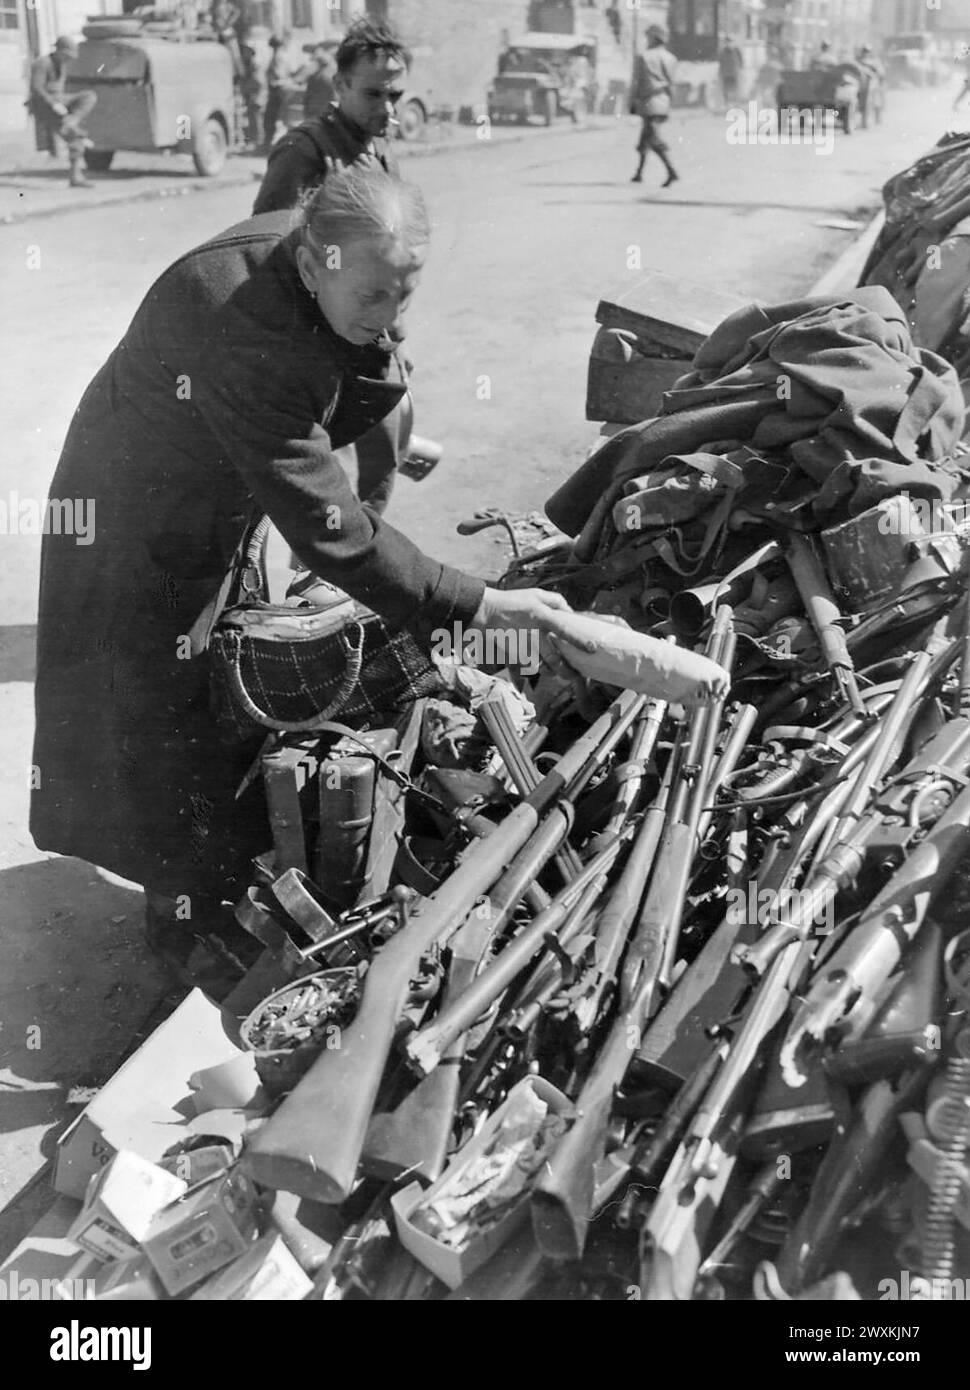 Femme âgée place un paquet sur une pile d'armes à Rubeland, Allemagne CA. Avril 1945 Banque D'Images